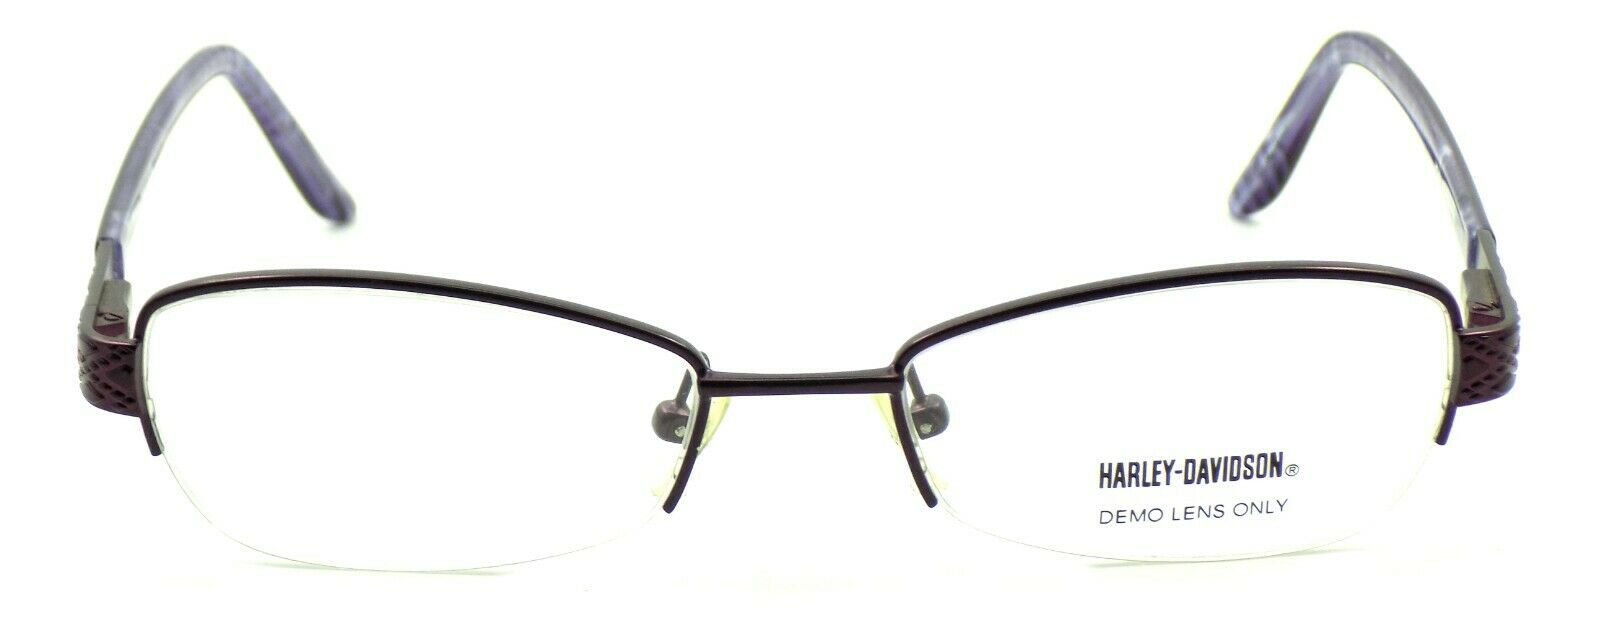 2-Harley Davidson HD504 EGG Women's Eyeglasses Frames 50-18-135 Eggplant Violet-715583443327-IKSpecs